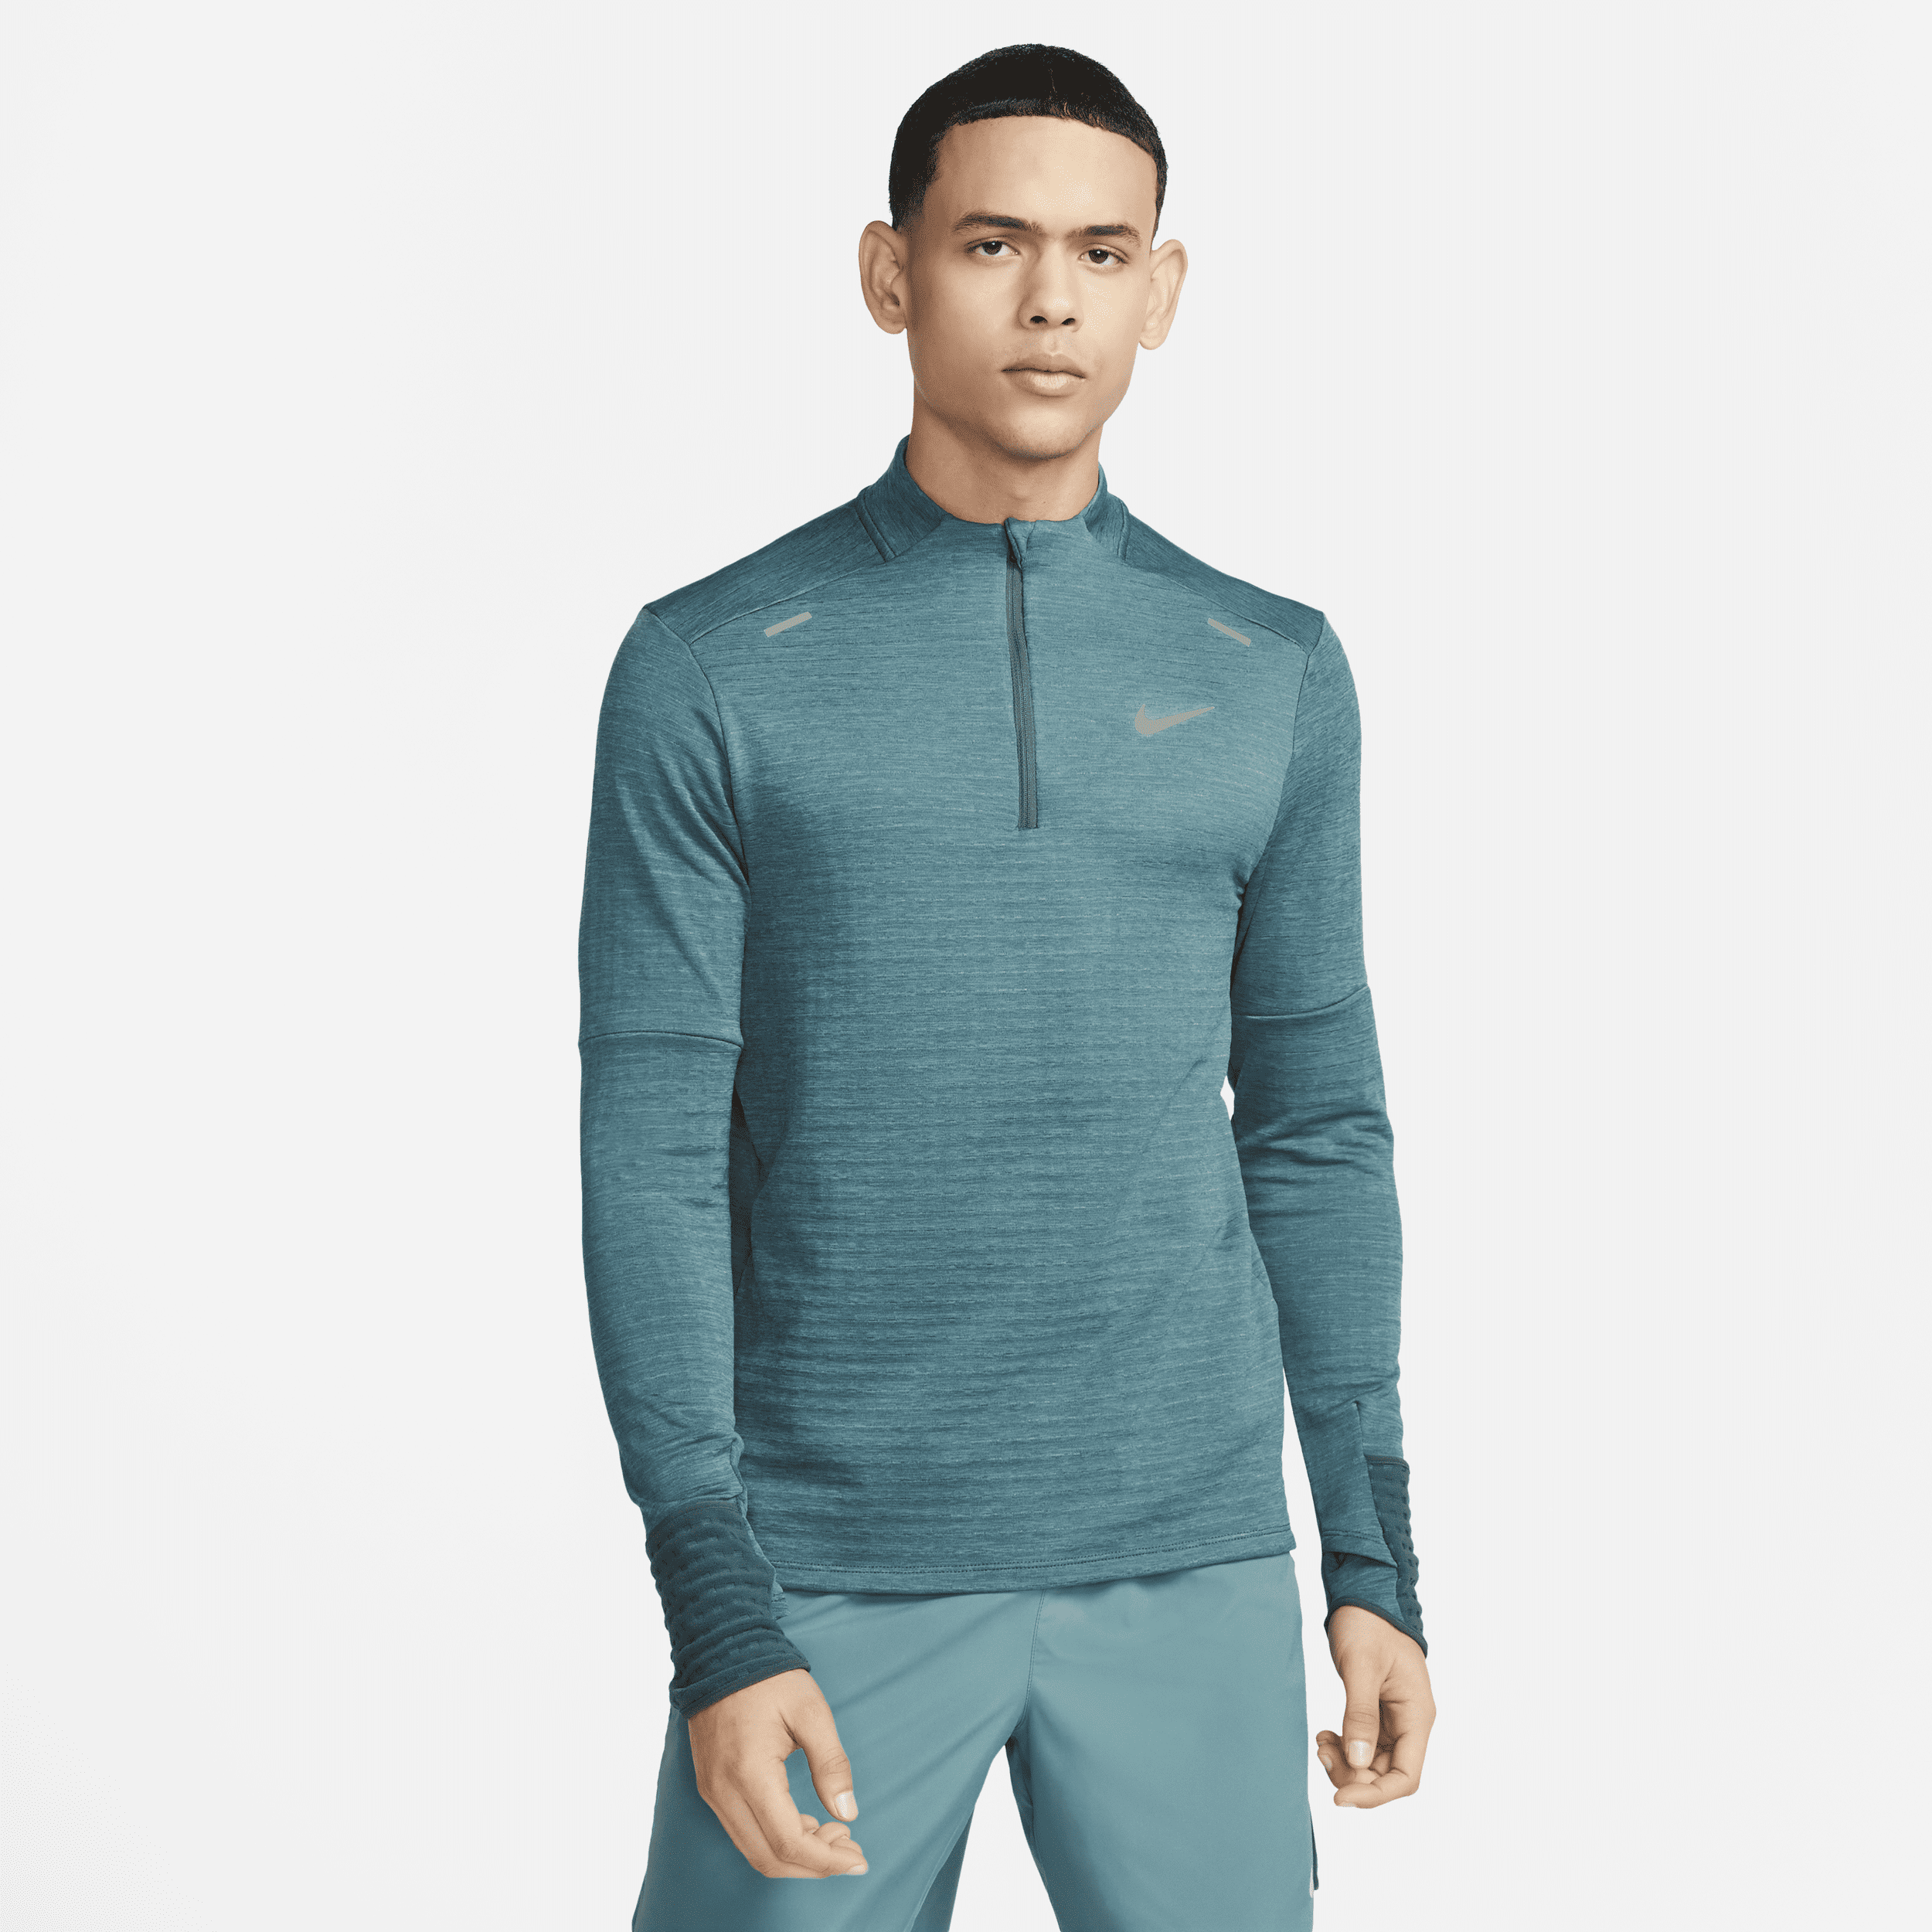 Registratie boerderij Jaarlijks Nike Men's Therma-fit Repel Element 1/4-zip Running Top In Grey | ModeSens